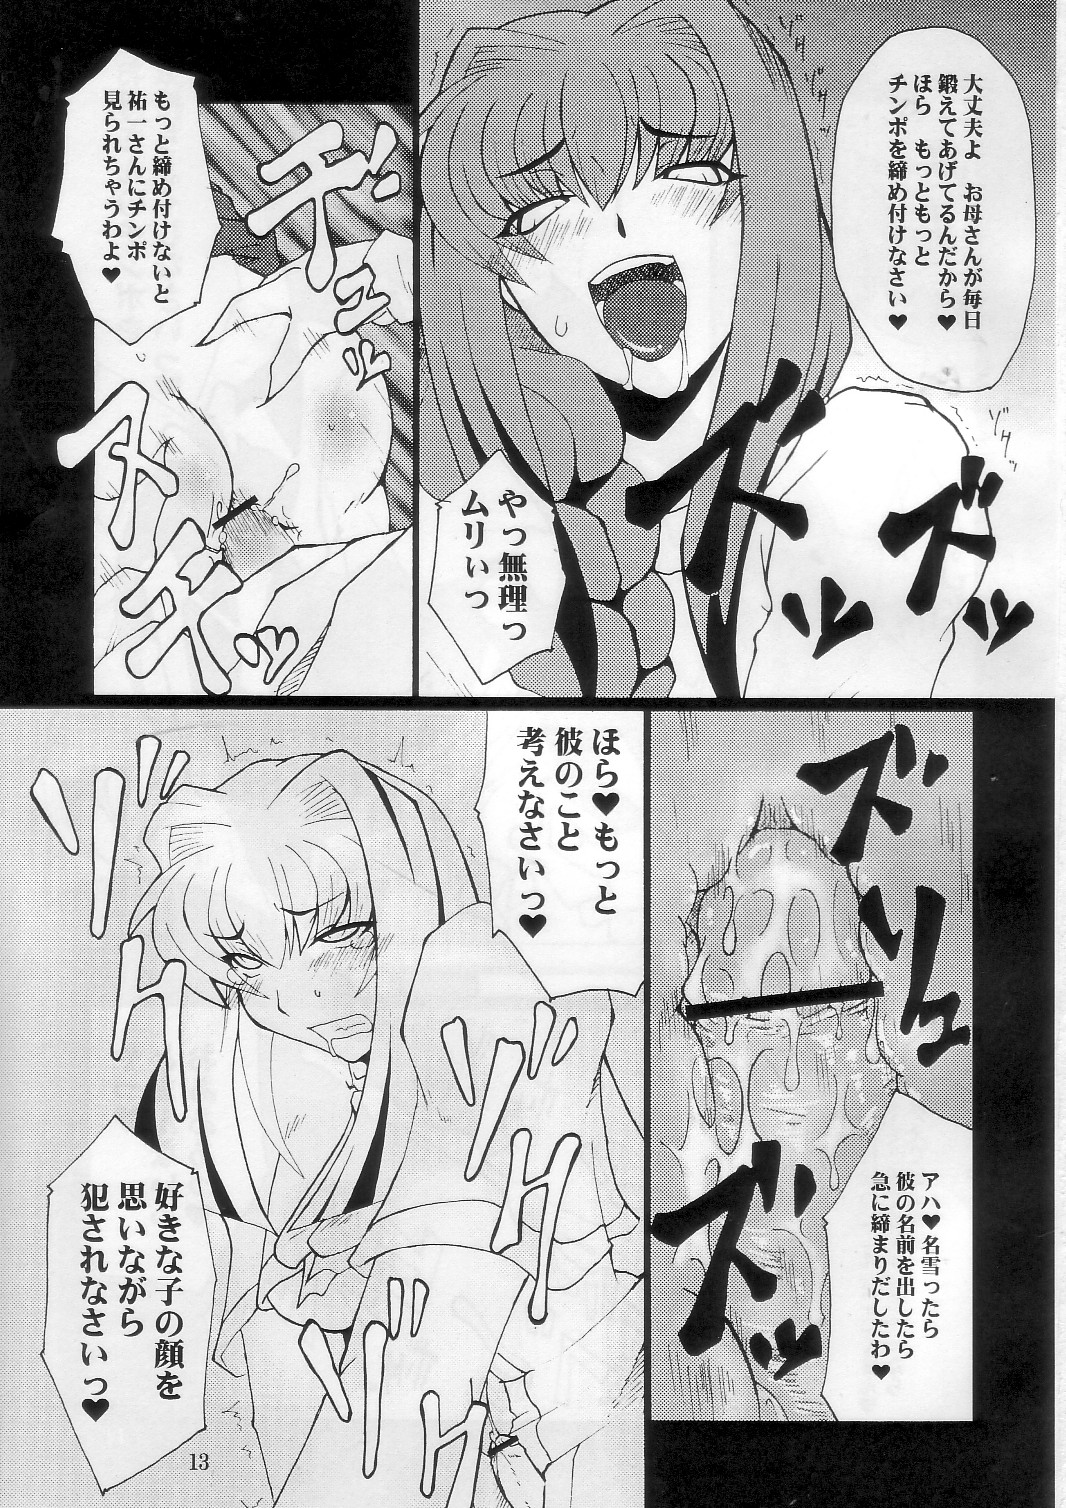 [Hanjuku Yude Tamago] Kyouki vol.5 (Kanon) page 13 full